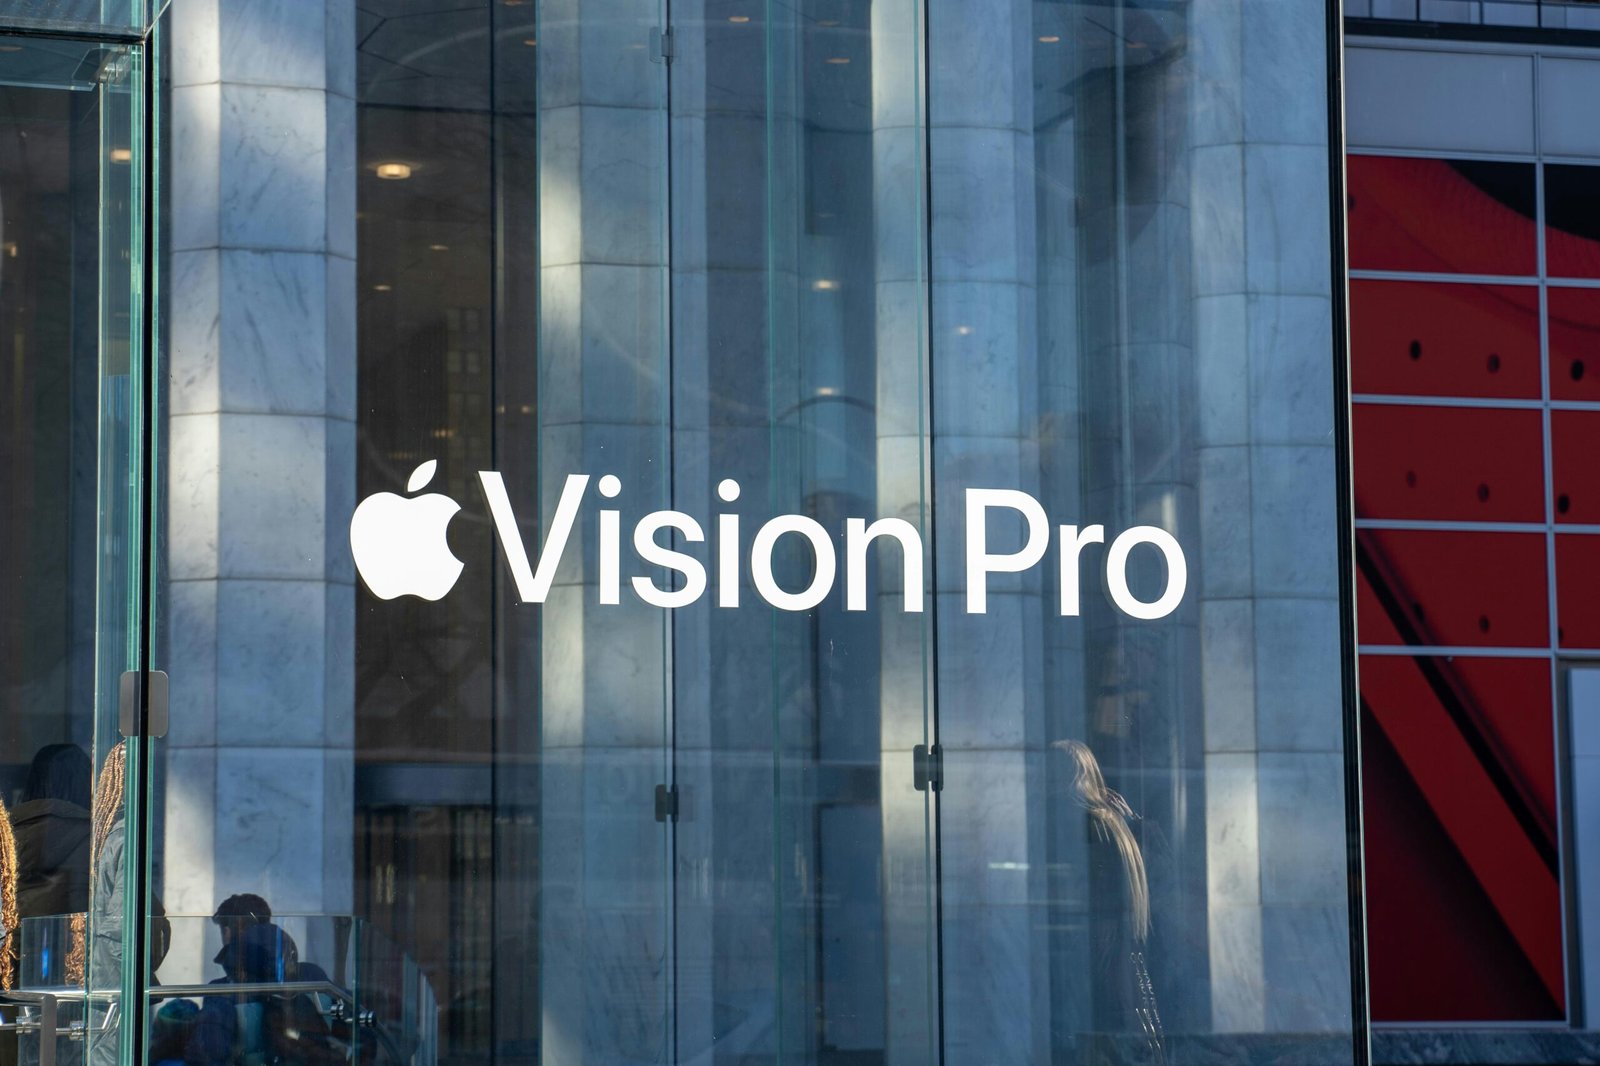 Vision Pro Launch